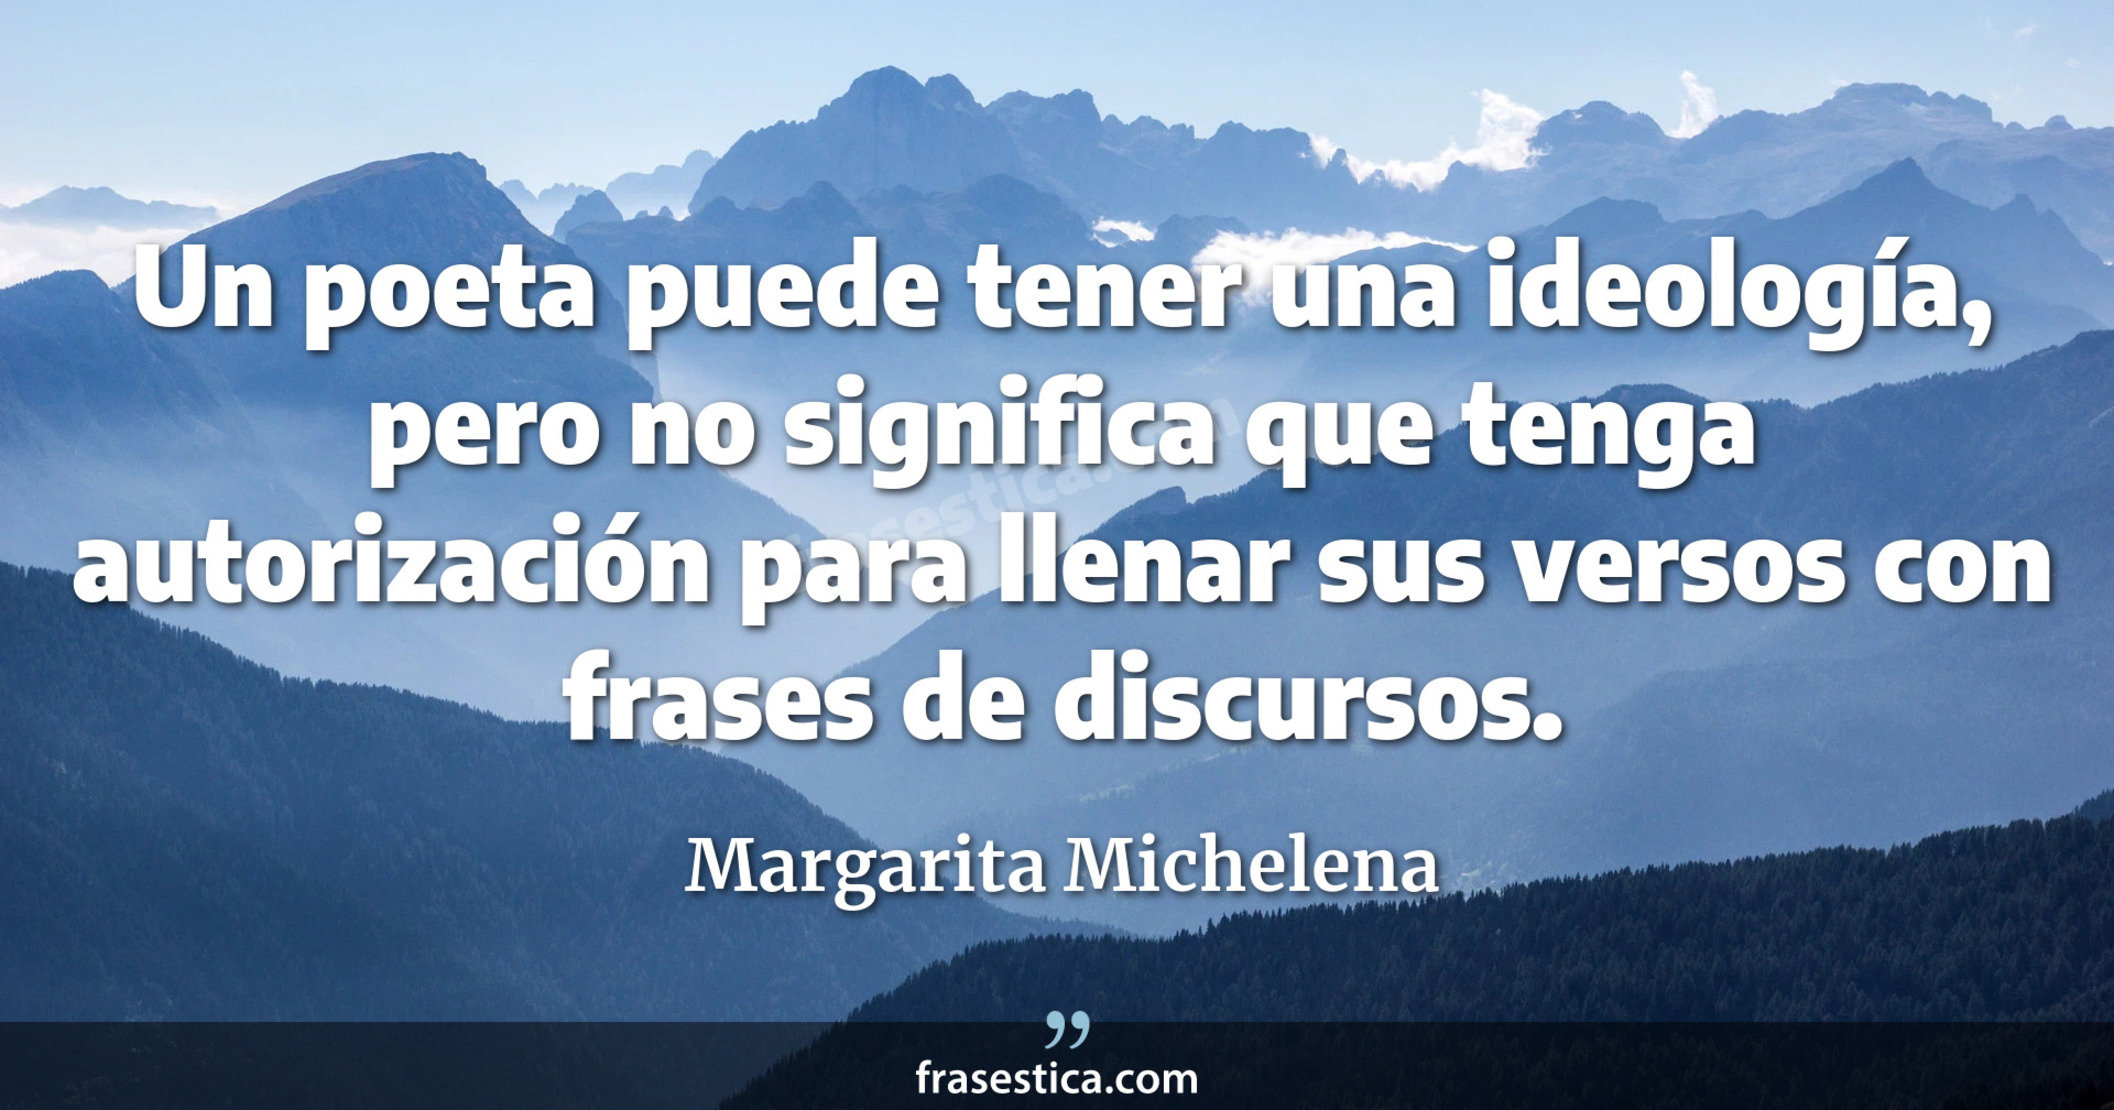 Un poeta puede tener una ideología, pero no significa que tenga autorización para llenar sus versos con frases de discursos. - Margarita Michelena